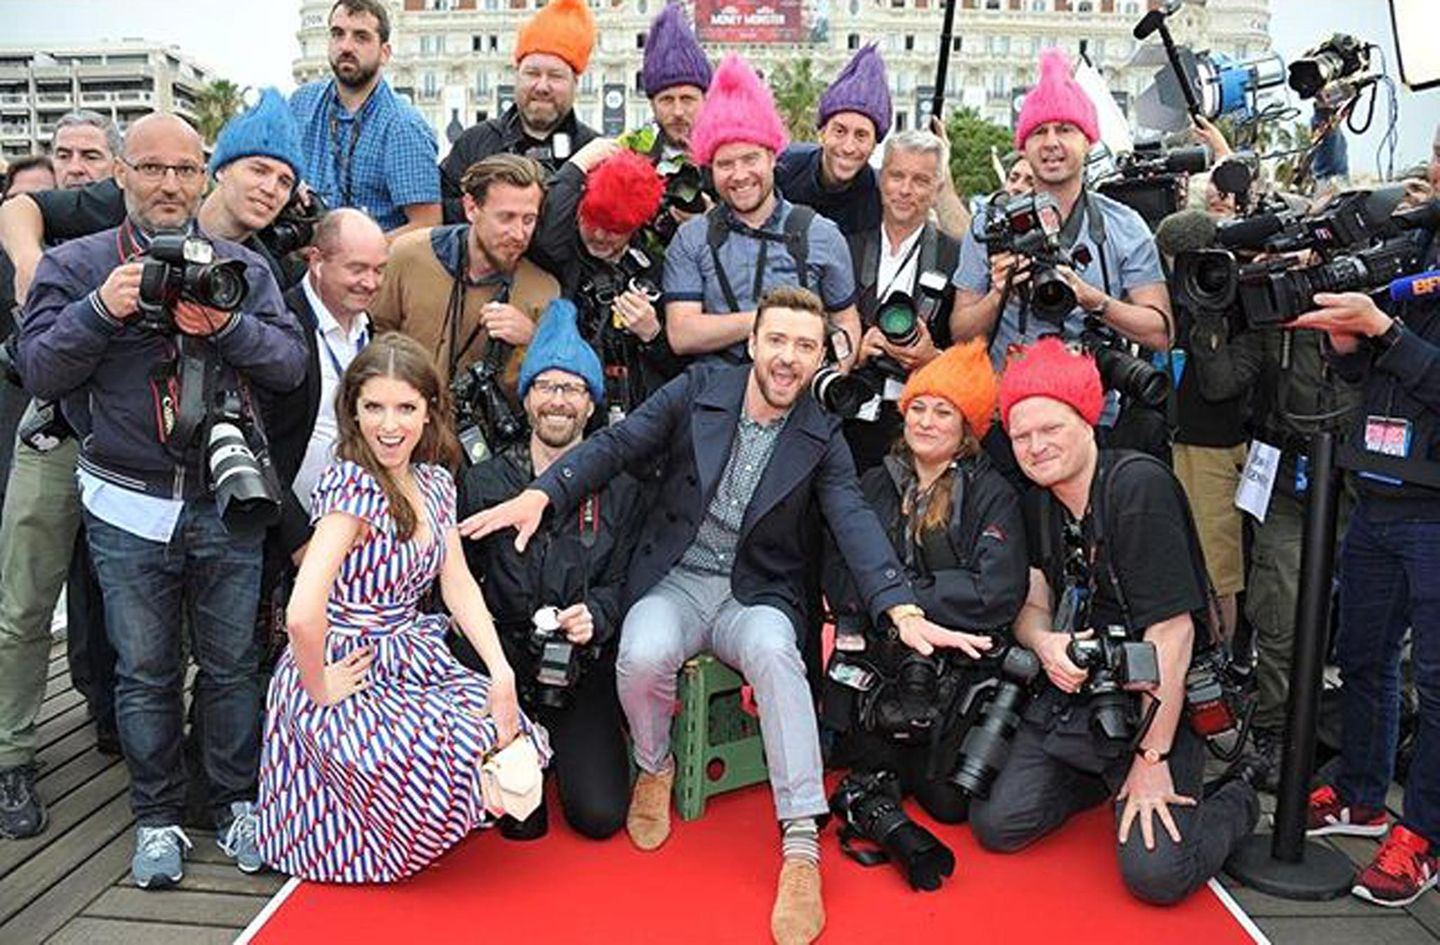 Anna Kendrick und Justin Timberlake stellen ihren Animationsfilm "Trolls" vor und machen sich einen Spaß daraus, die Fotografen am roten Teppich mit Trollfrisuren auszustatten.